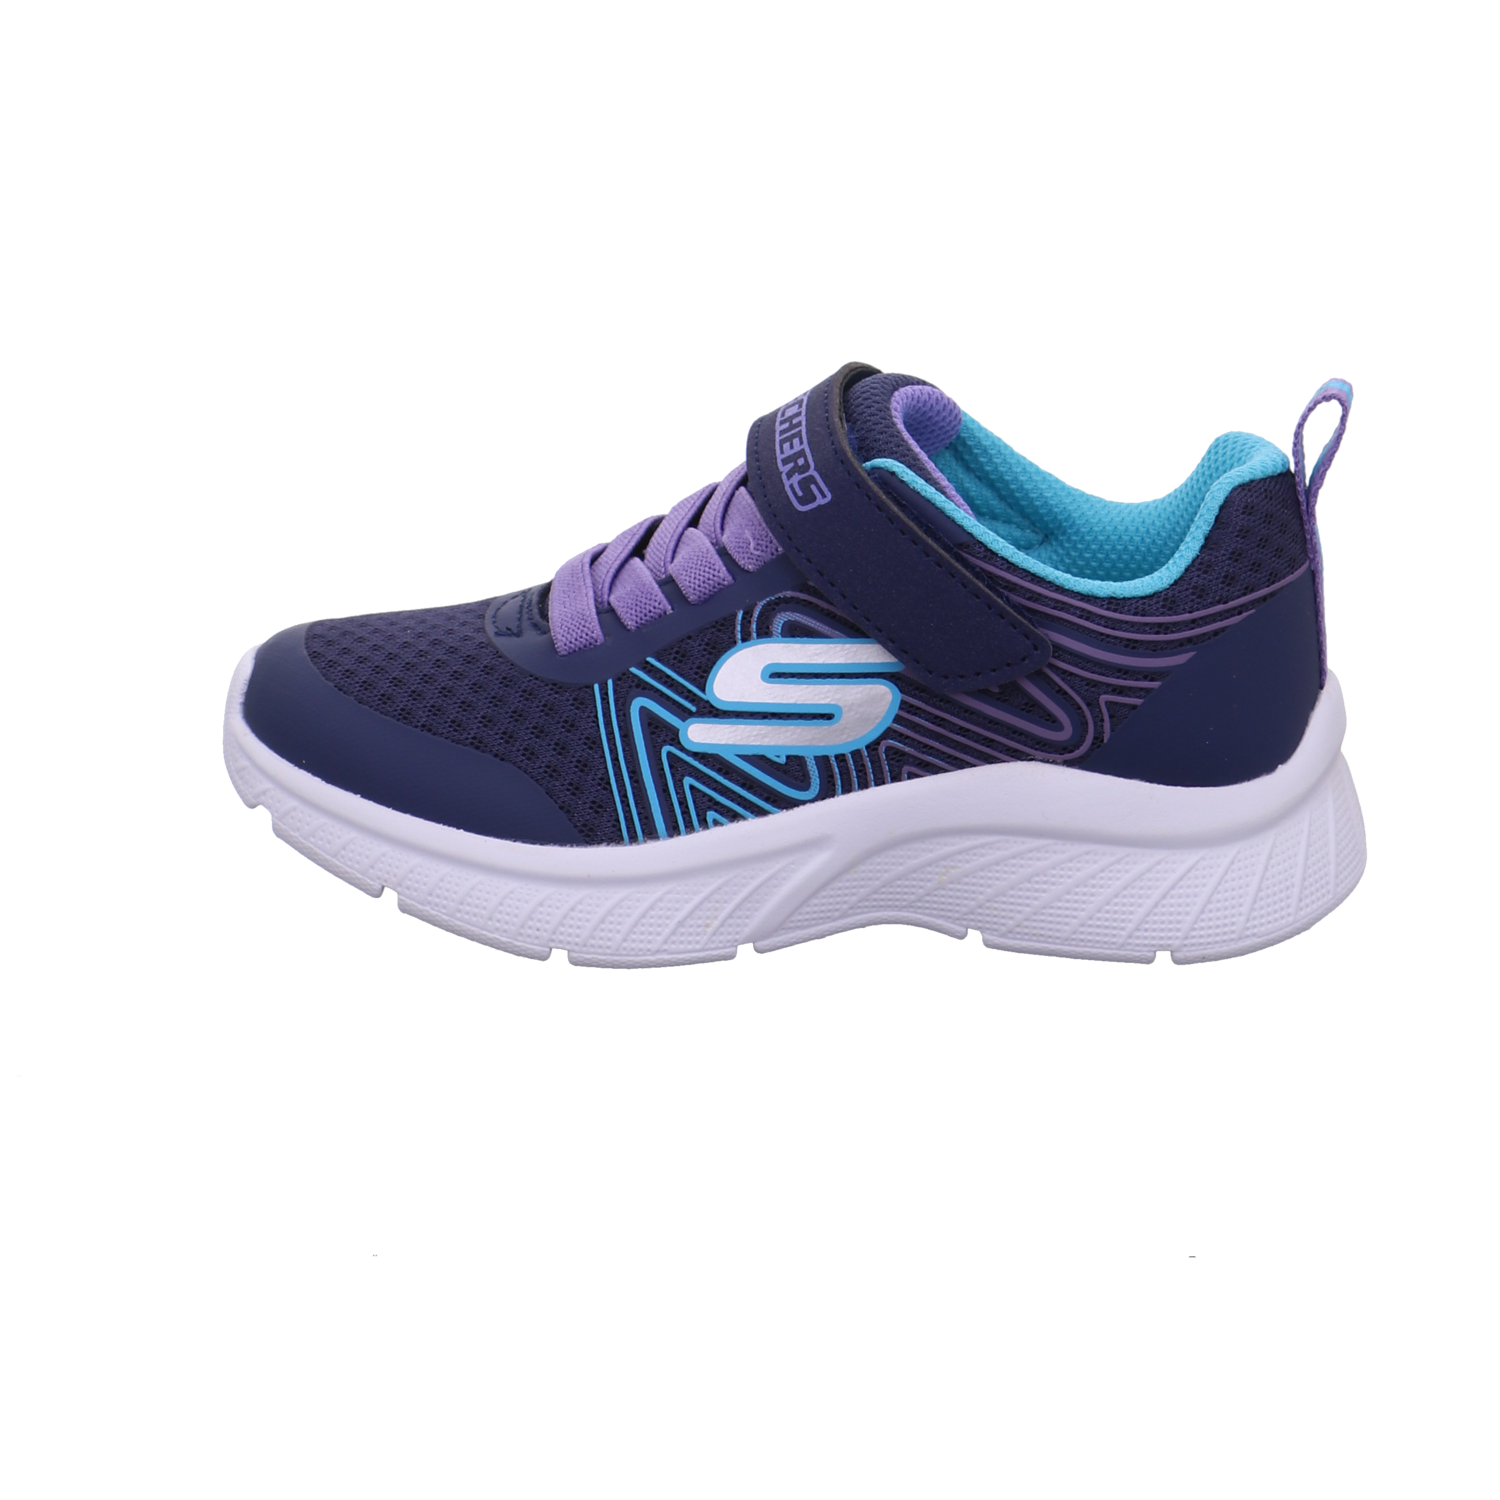 Skechers Microspec Plus - Swirl Sweet blau kombi Bild1